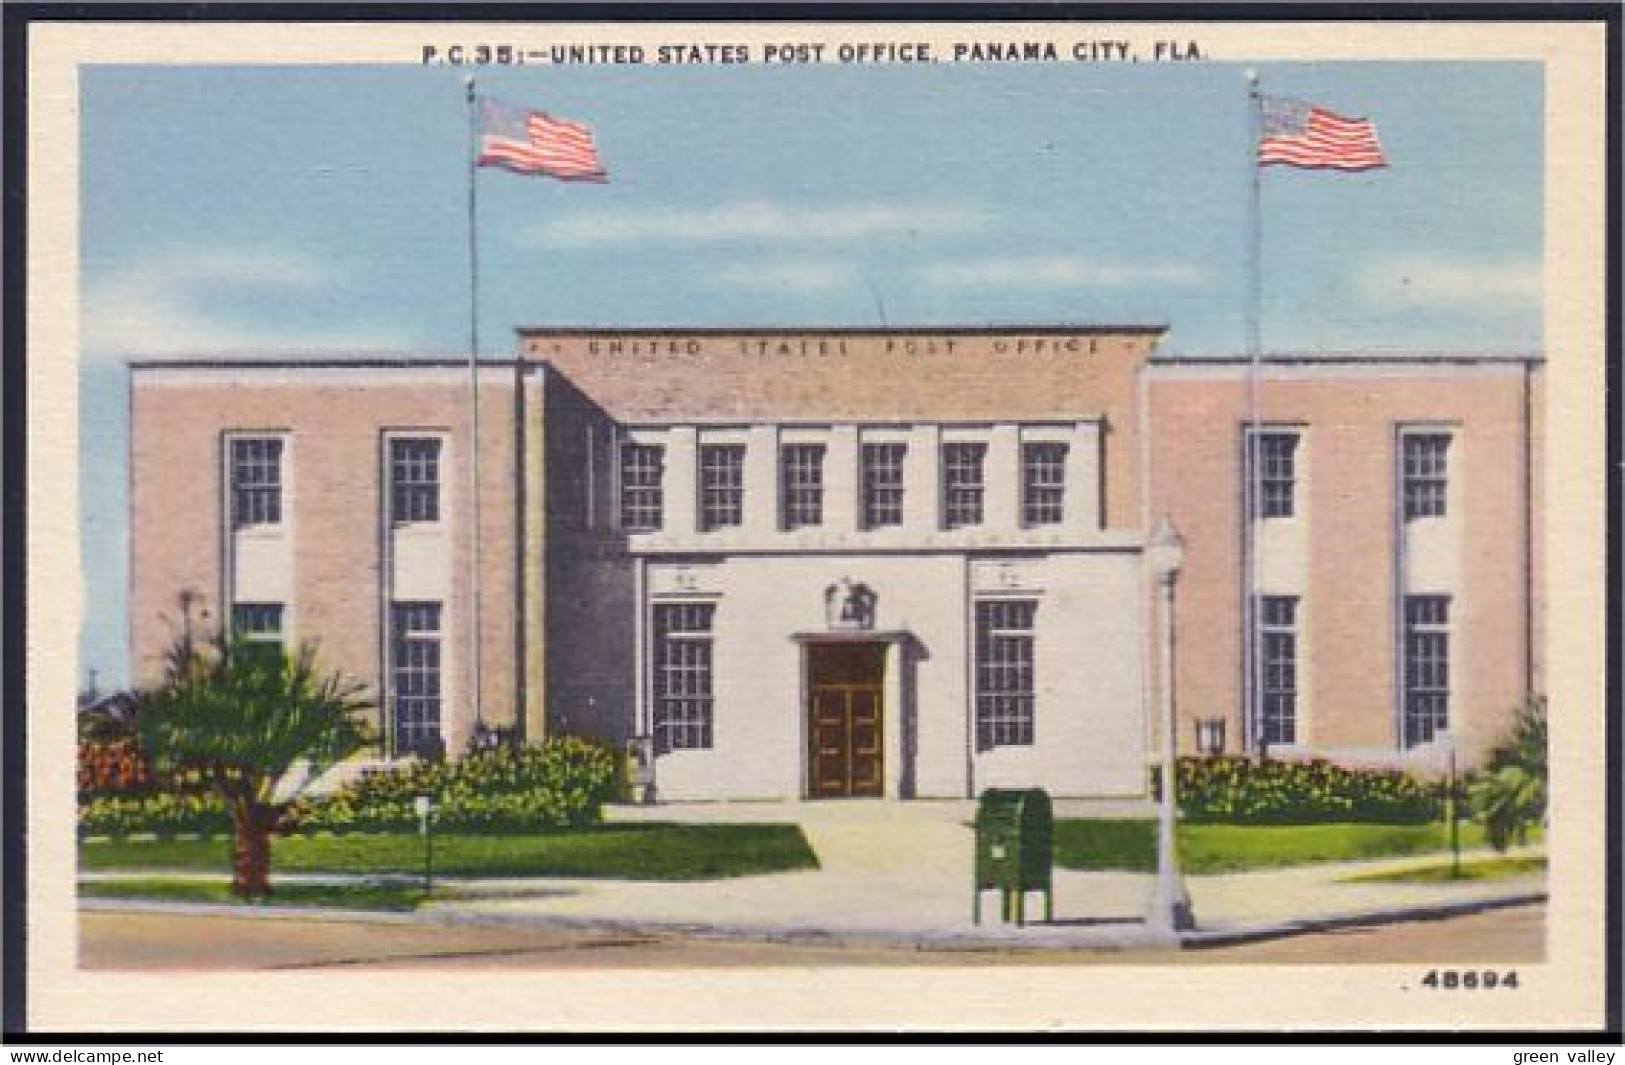 A45 492 PC US Post Office Panama City Unused - Panama City